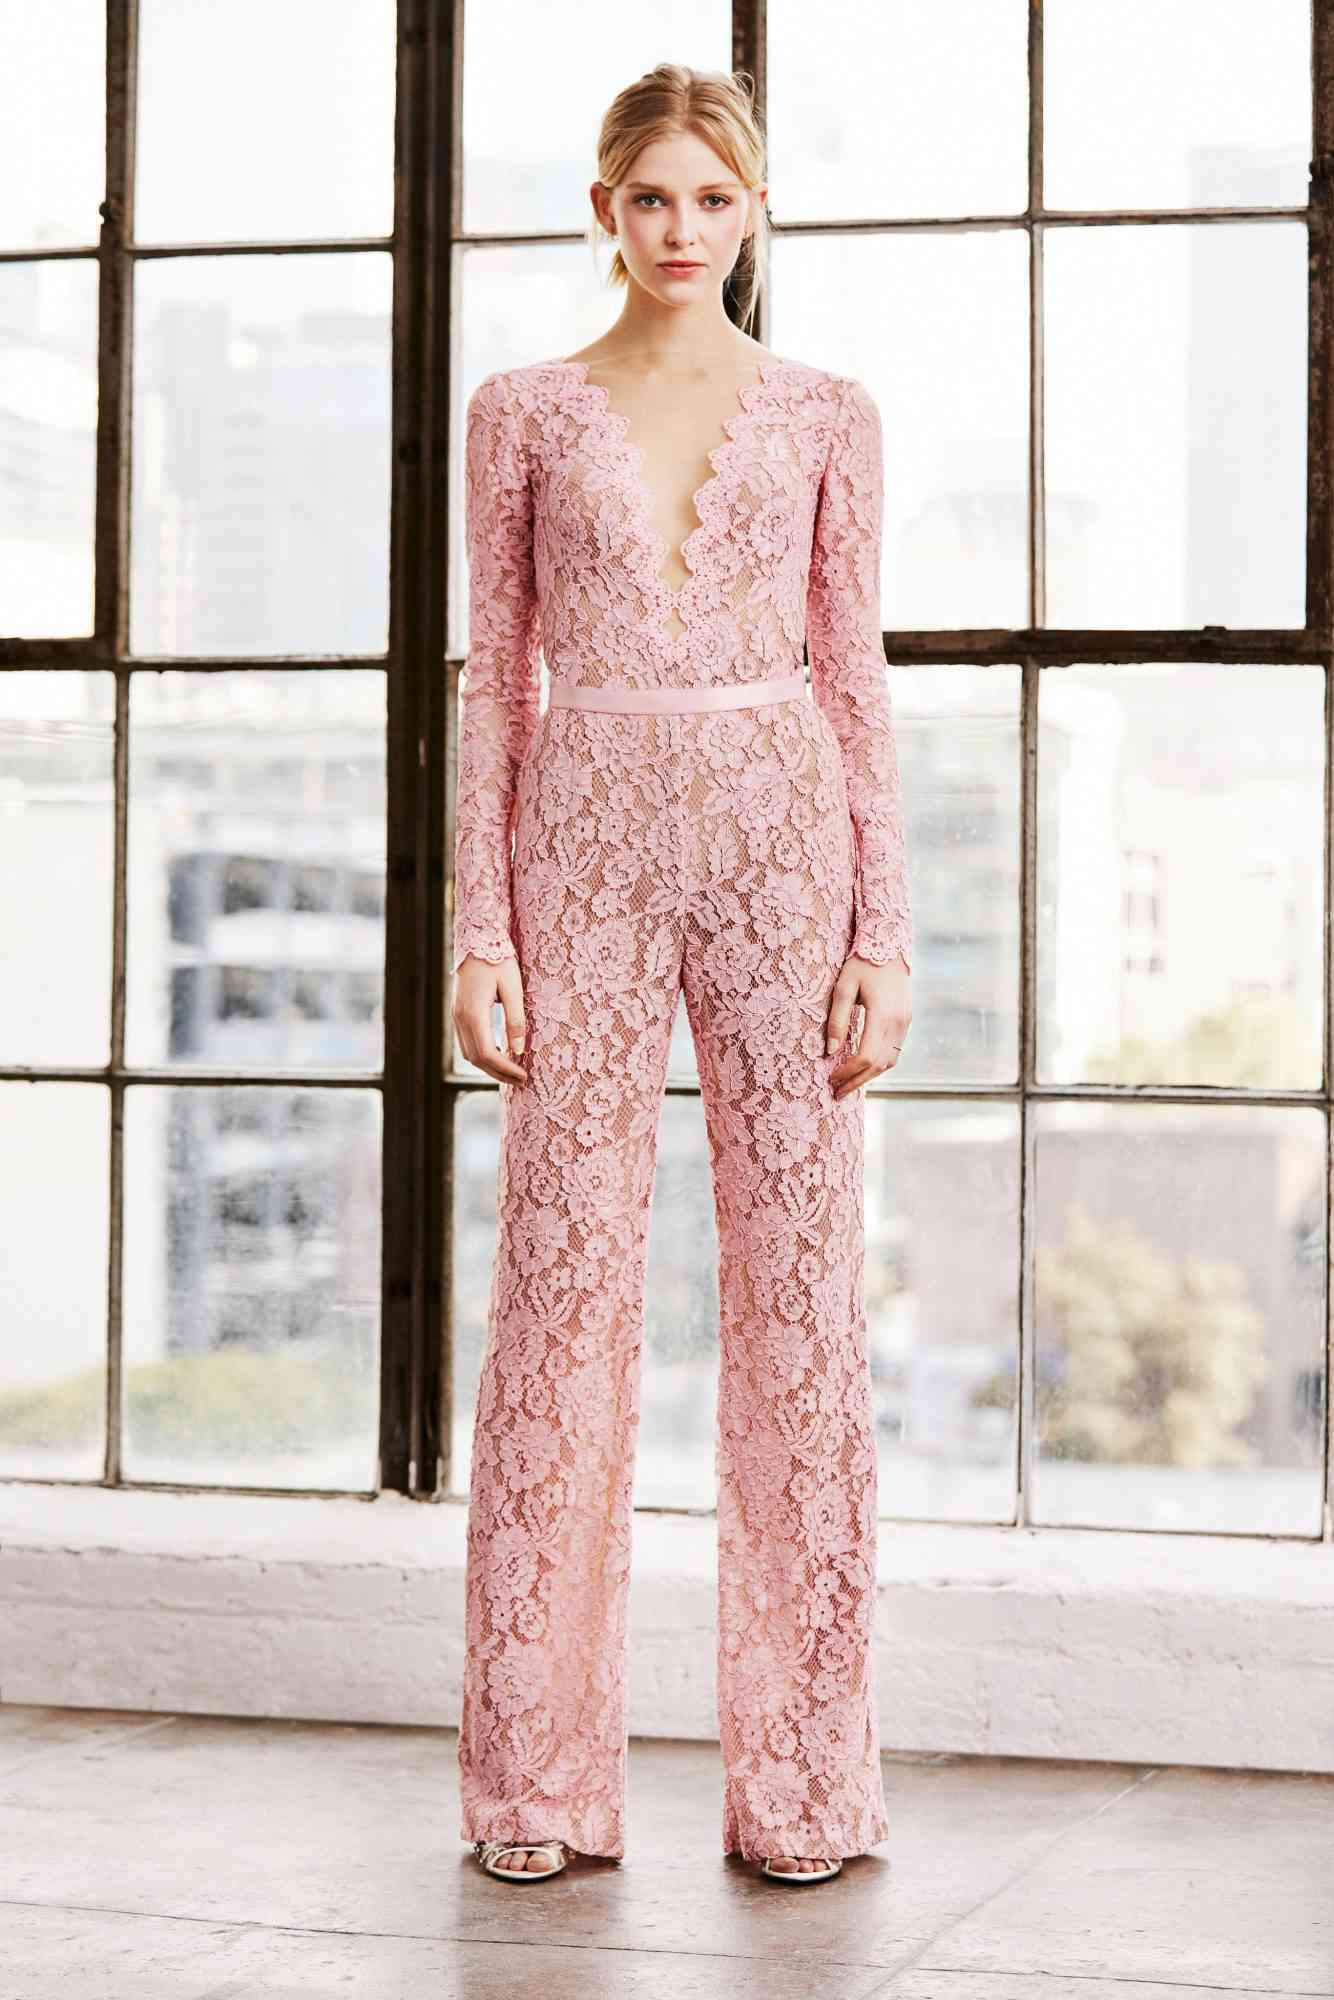 tadashi shoji wedding dress spring 2019 pink lace jumpsuit pants long sleeves